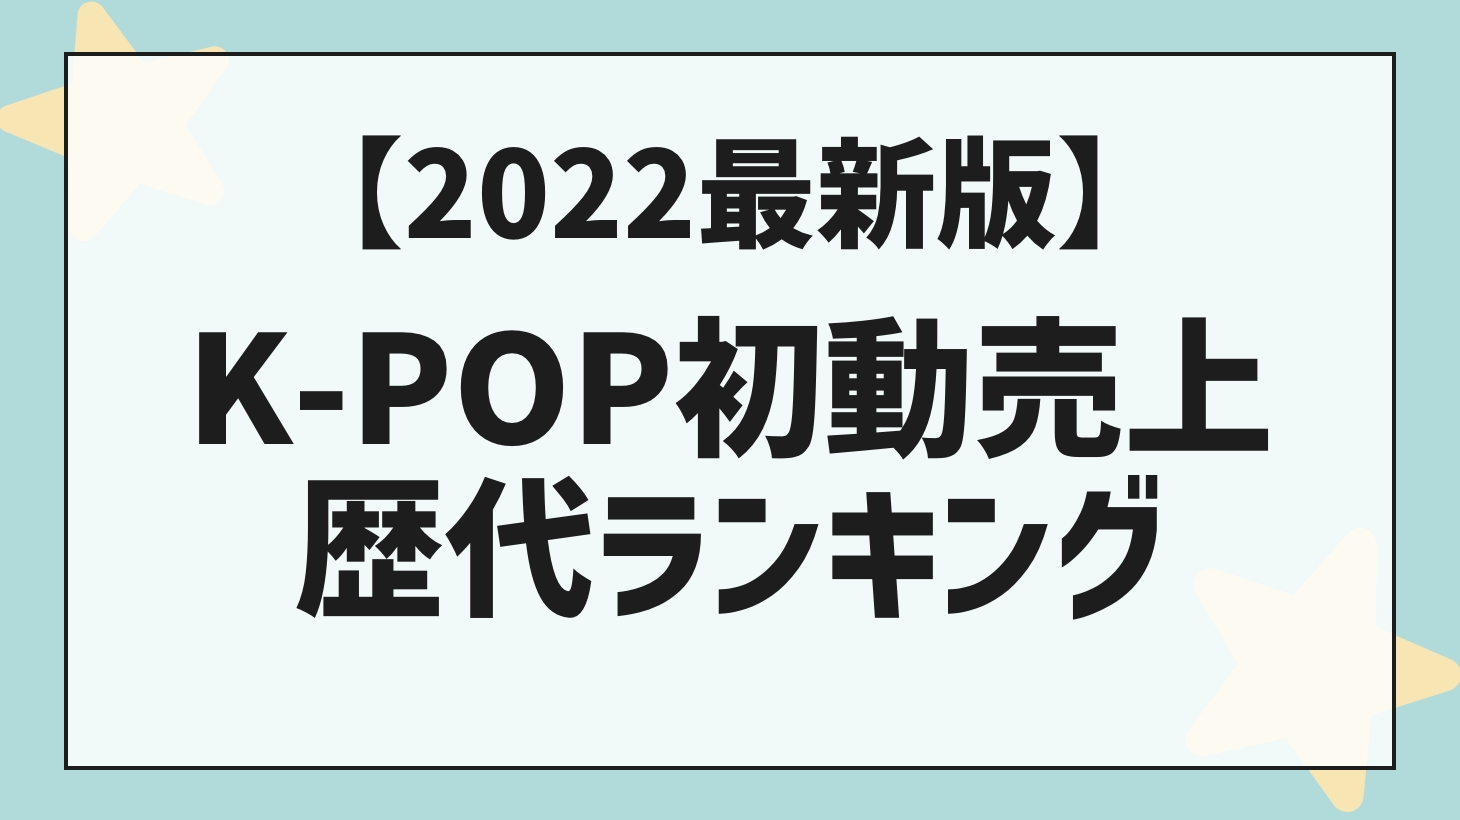 [2022 version] K-POP initial sales fee!